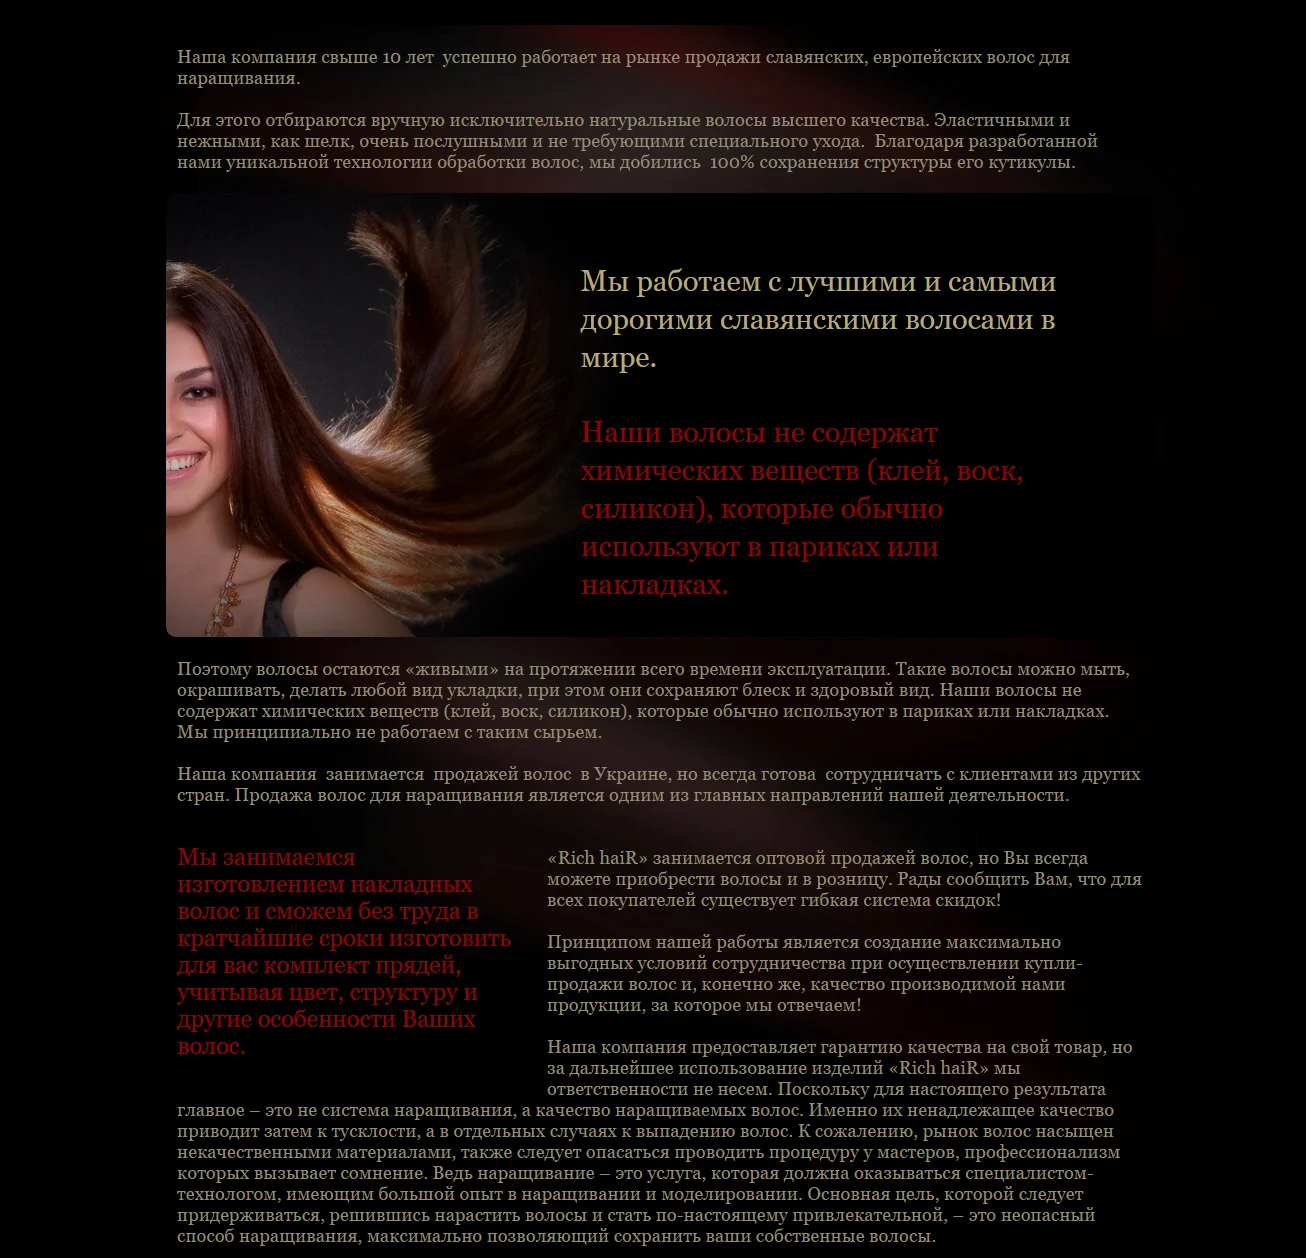 Создание интернет-магазина волос «Rich&nbsp;Hair» - О нас (2)